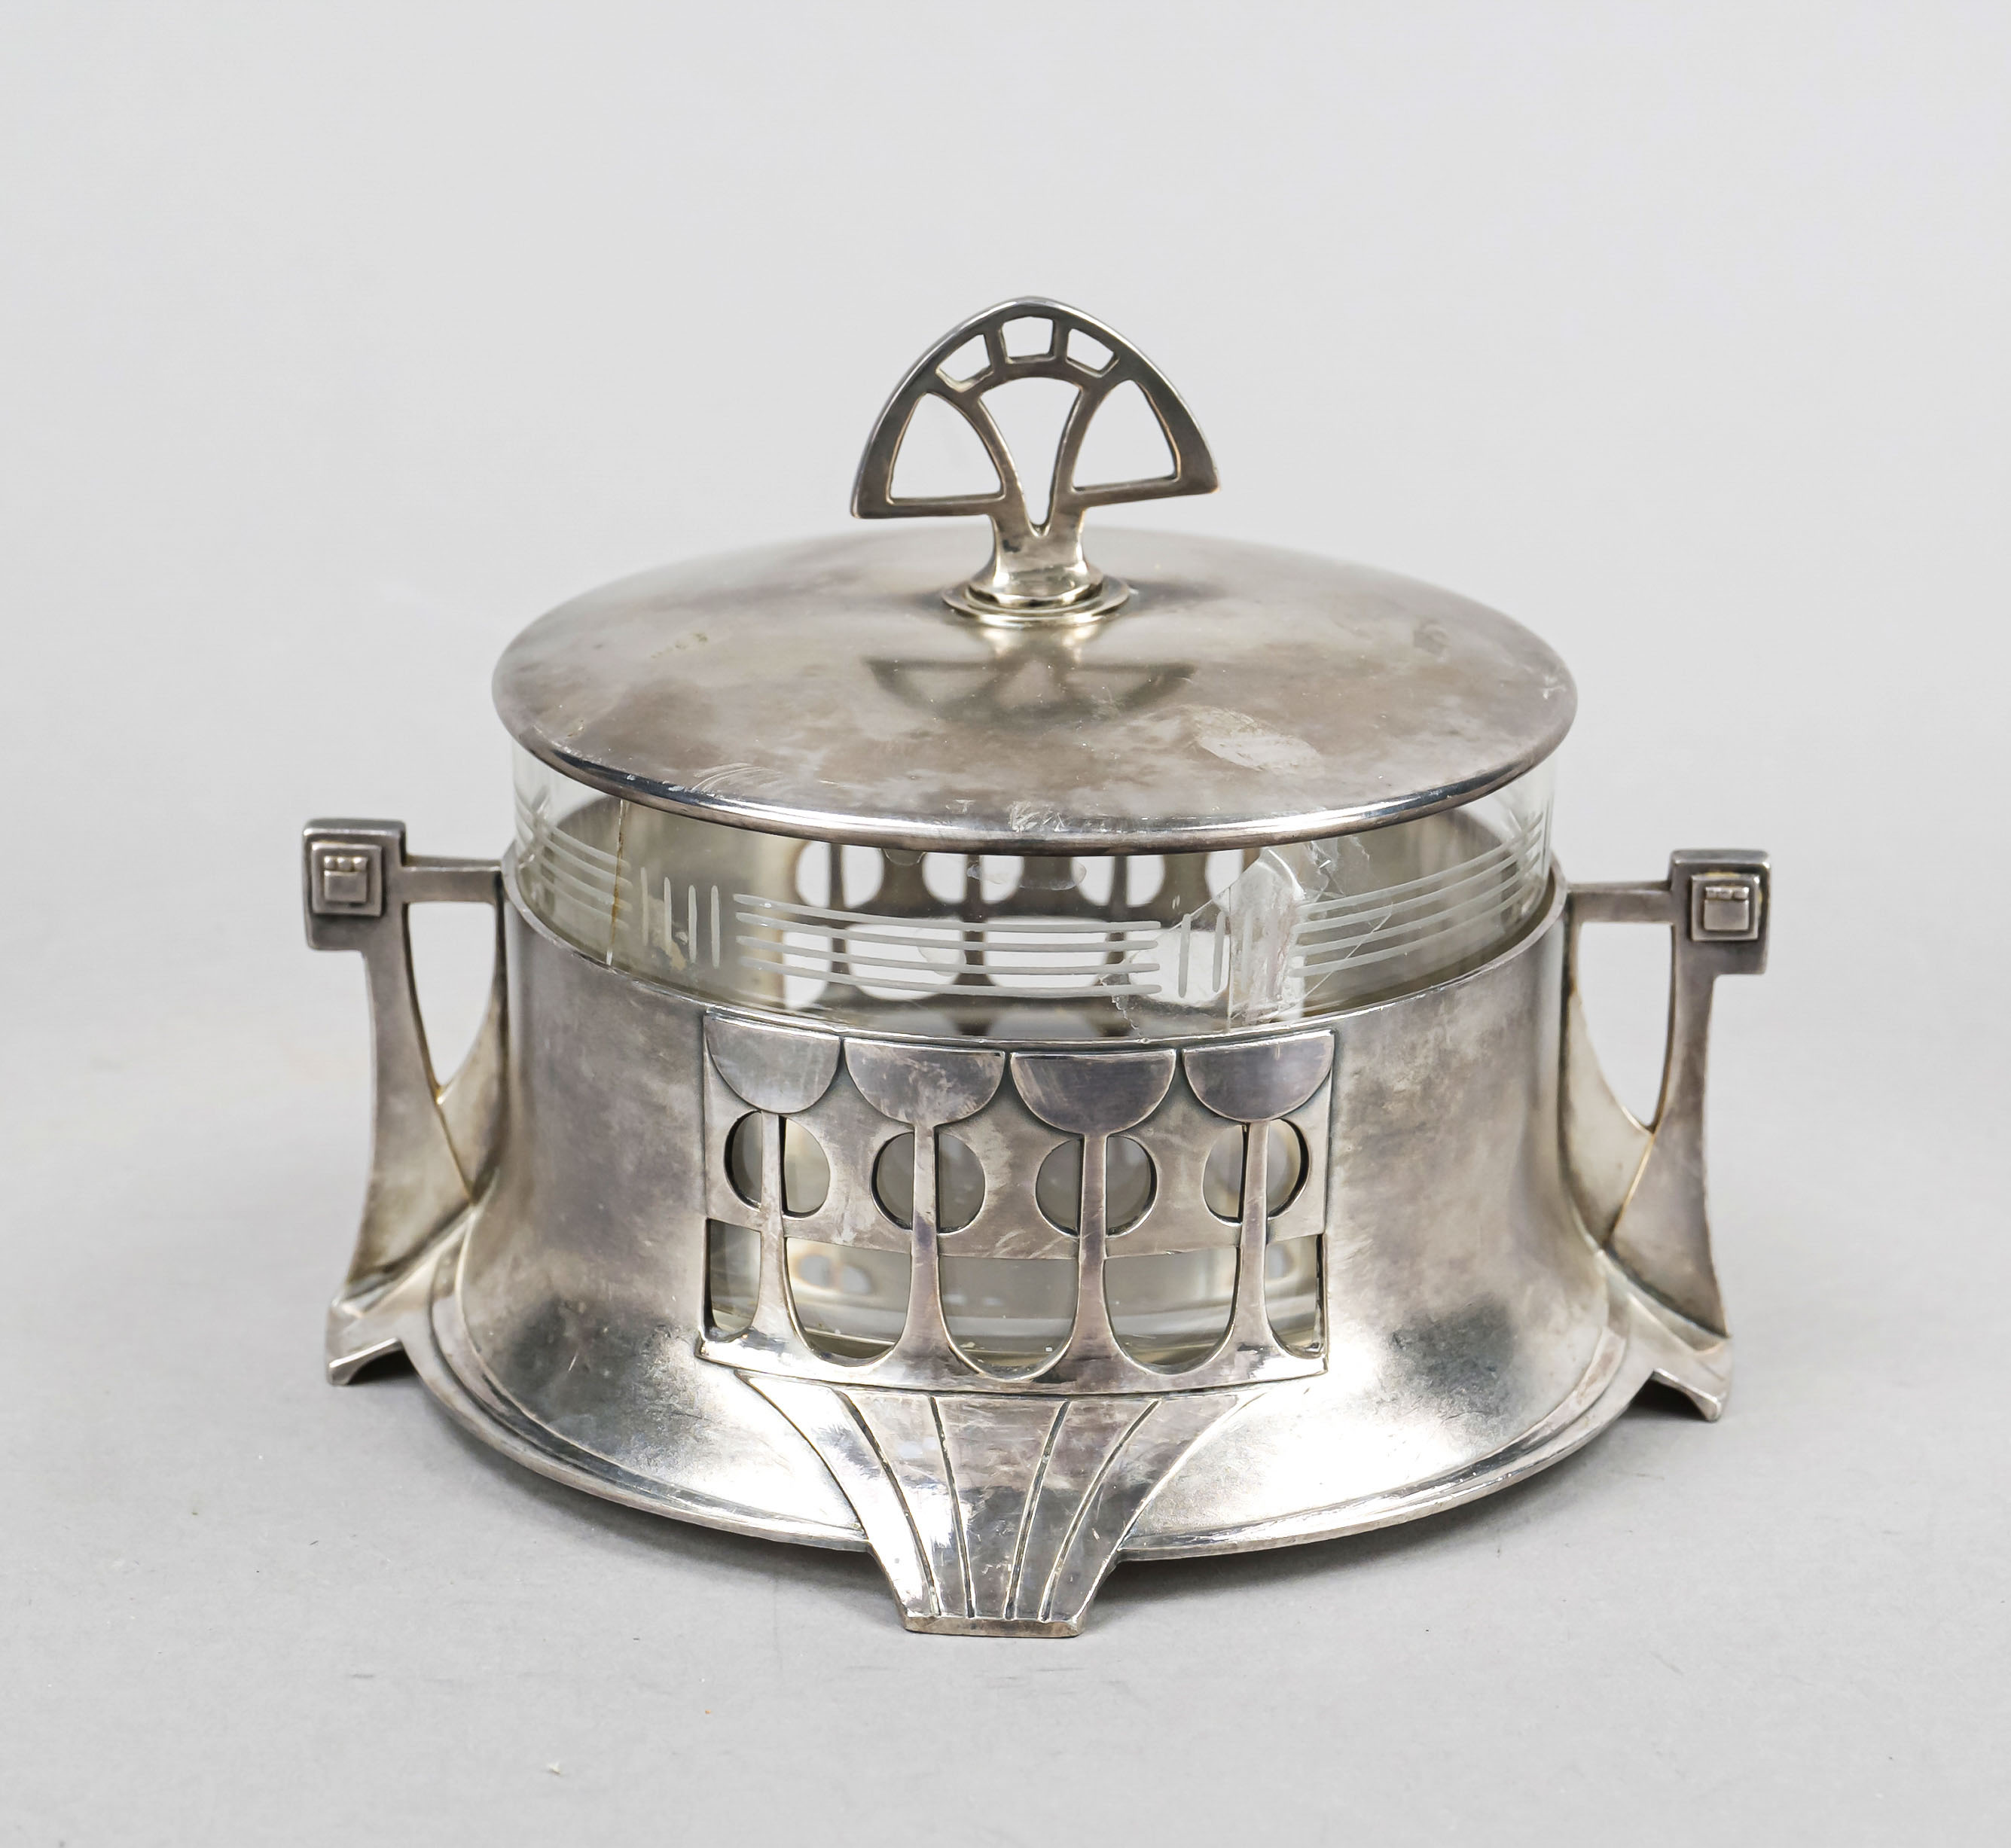 A round Art Nouveau lidded jar, German, early 20th century, maker's mark WMF, Geislingen, ostrich